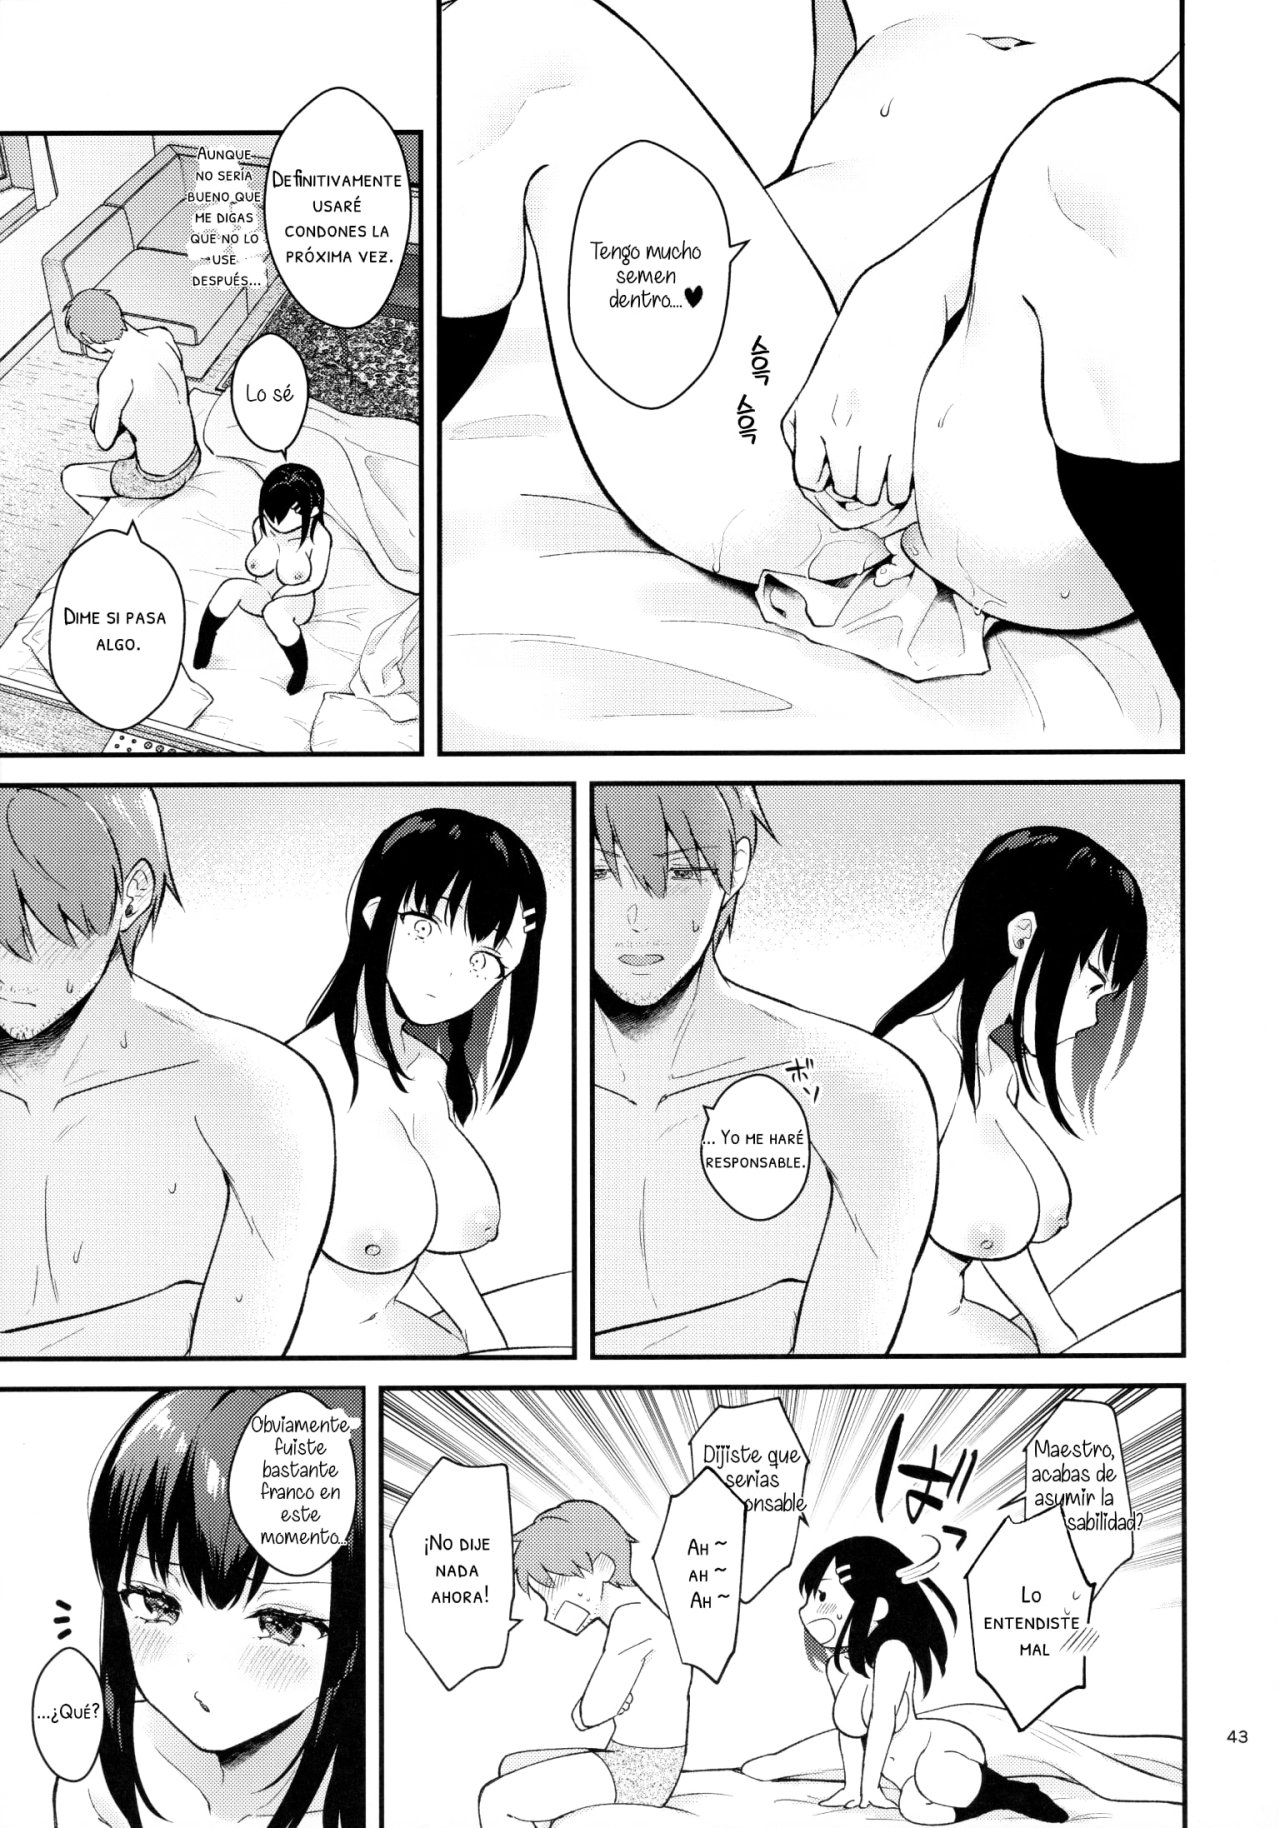 Sunshower-JK Miyako no Valentine Manga 3 - 41